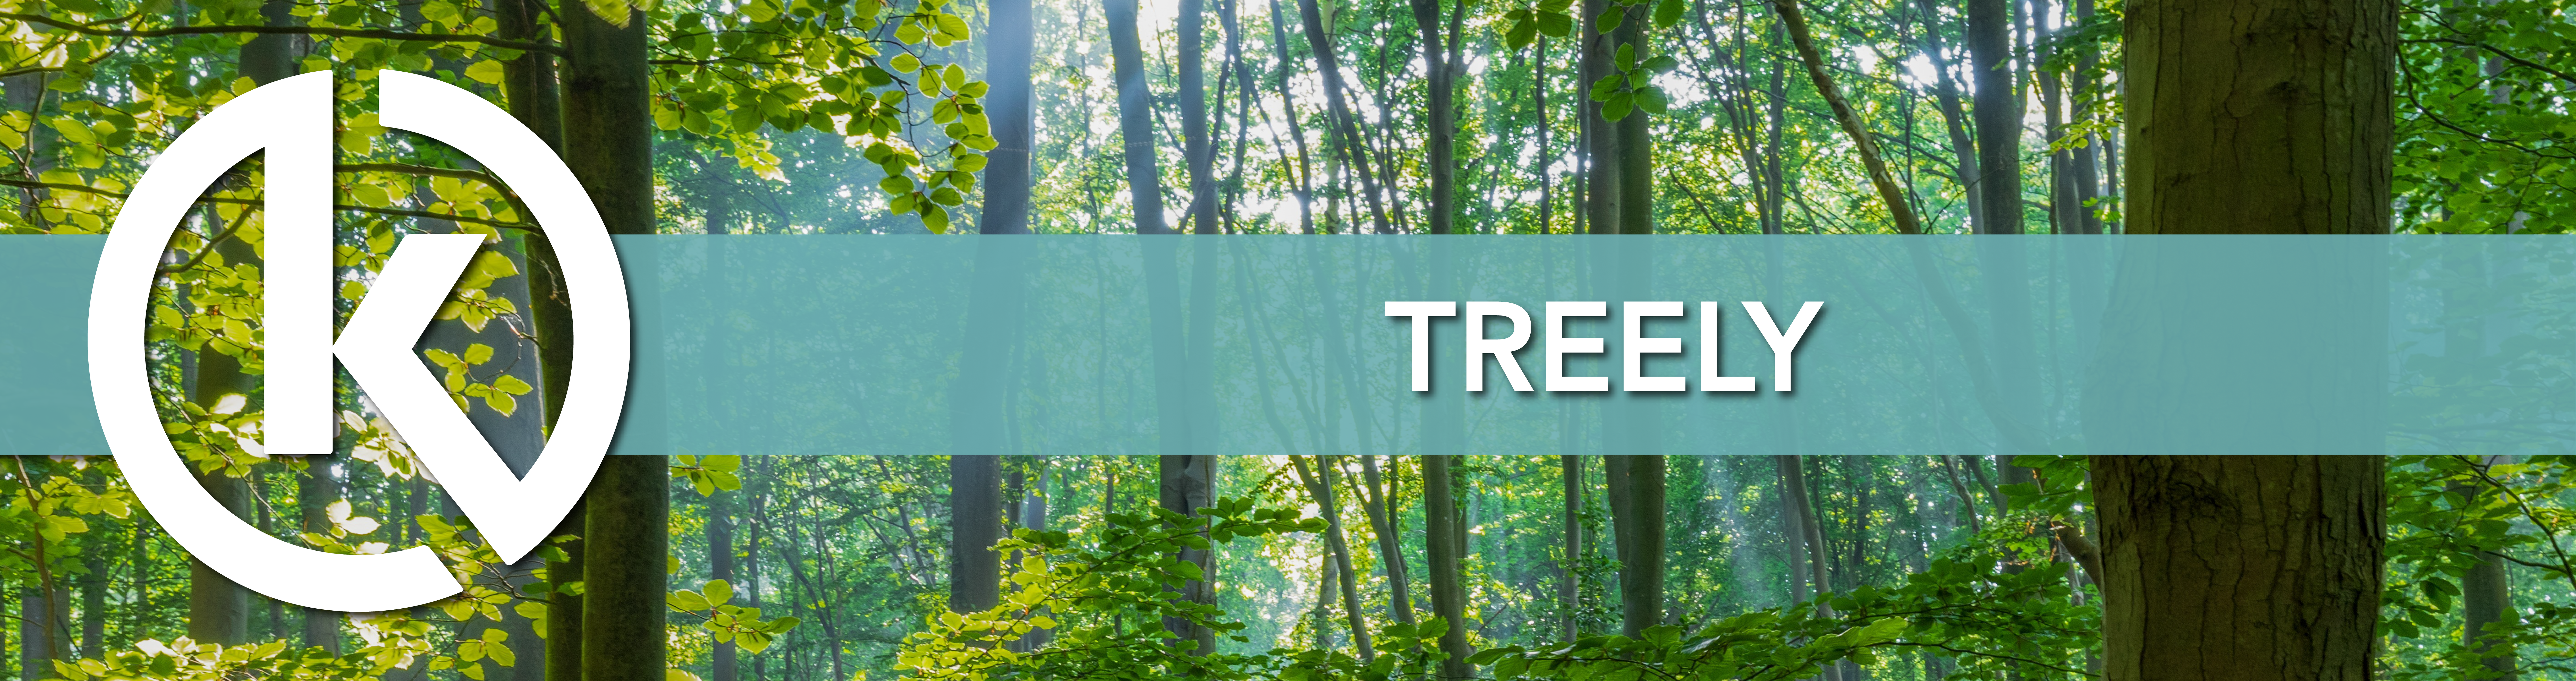 Treely : le défi où chaque pas compte